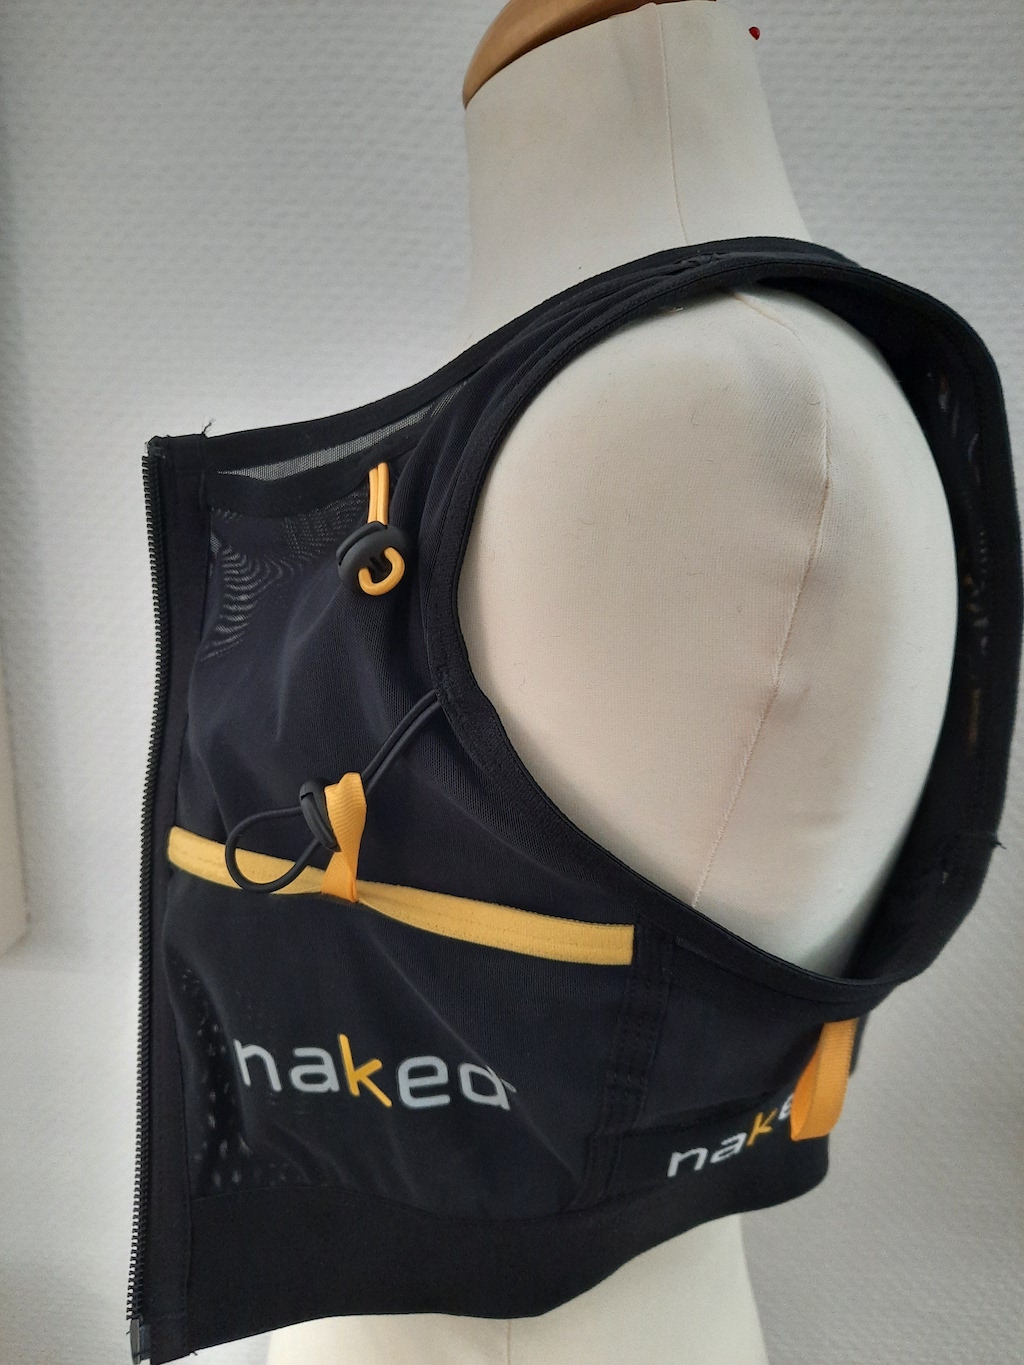 20210304_133719 - Naked Running Vest HC: Galerie - xc-run 